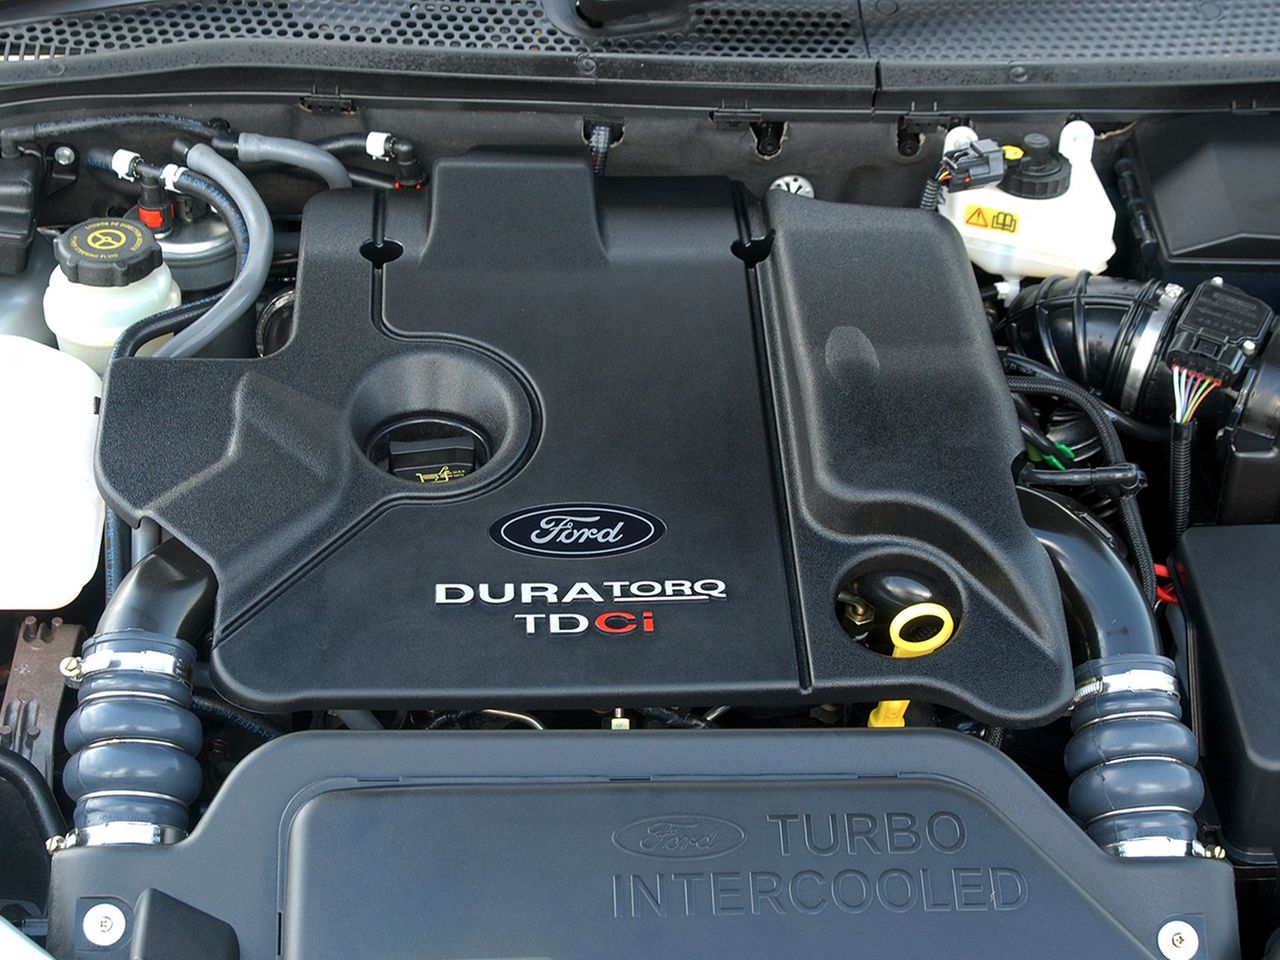 Motor 1.8 TDCi to niezbyt ekonomiczny, dynamiczny i "czysty" silnik tego producenta, ale jeden z najtańszych w eksploatacji i trwały. Jednocześnie ostatni autorski, udany motor wysokoprężny Forda w samochodzie osobowym. Nie bierzemy pod uwagę najnowszego 1.5 TDCi